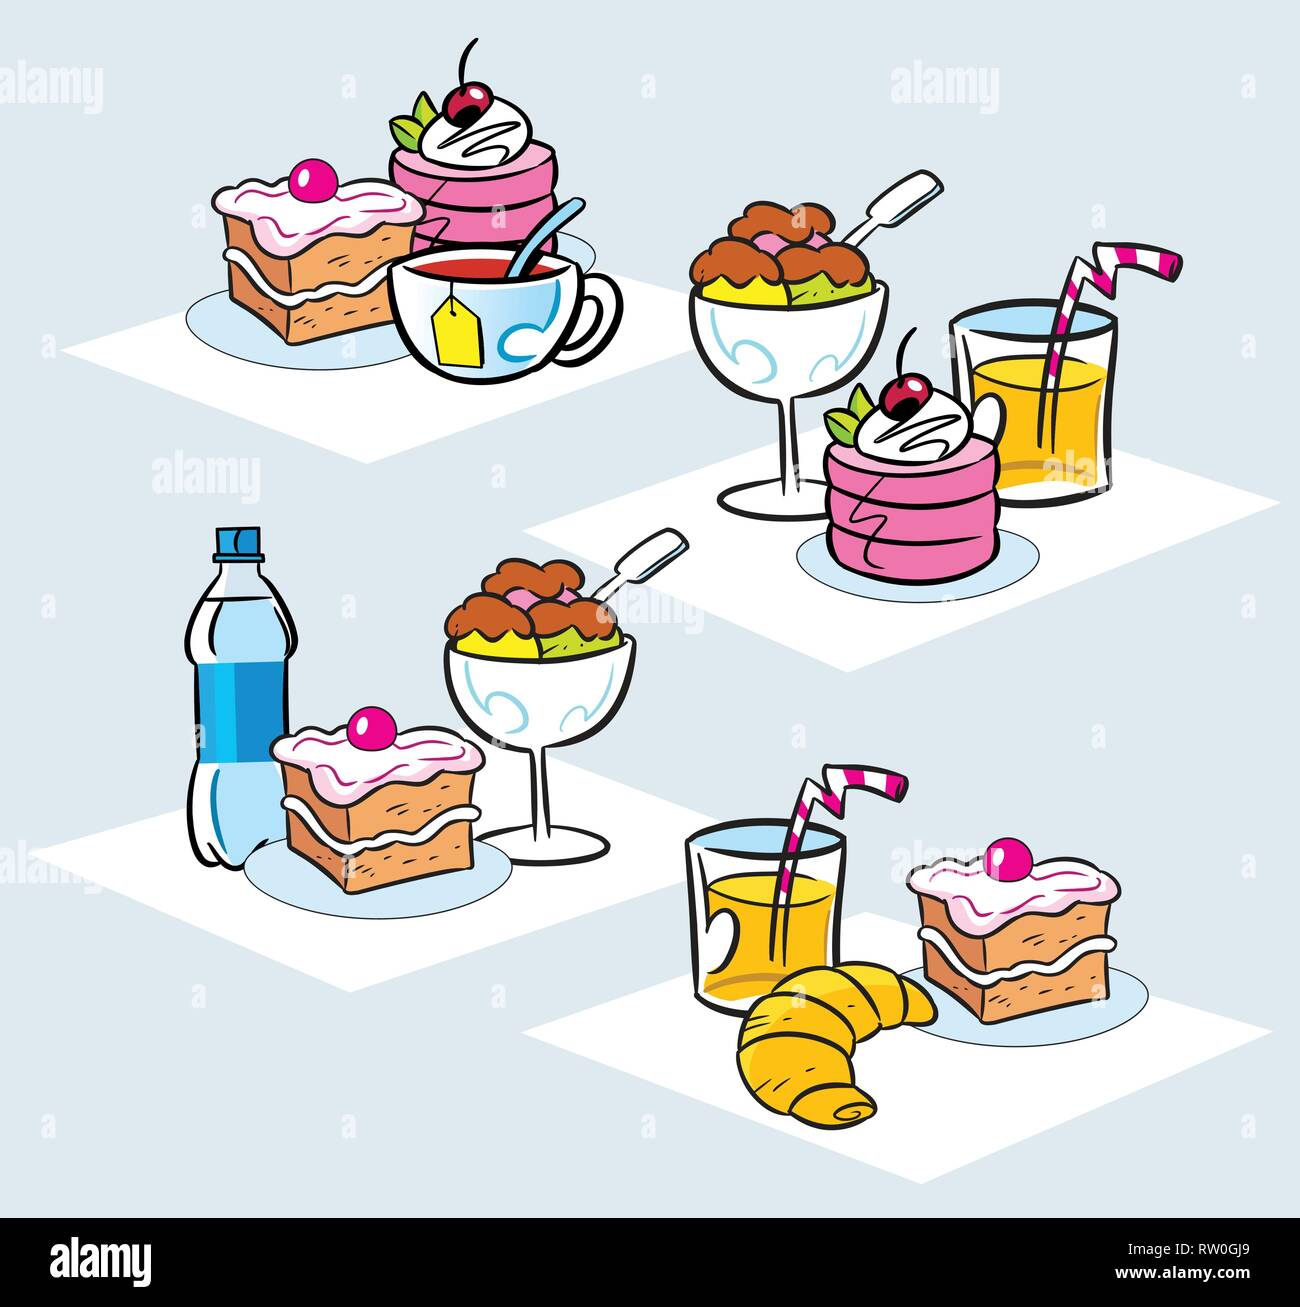 Die Abbildung zeigt einige Arten von Kuchen, Desserts, Eis und Getränke. Abbildung im Cartoon Stil gemacht, auf separaten Ebenen. Stock Vektor